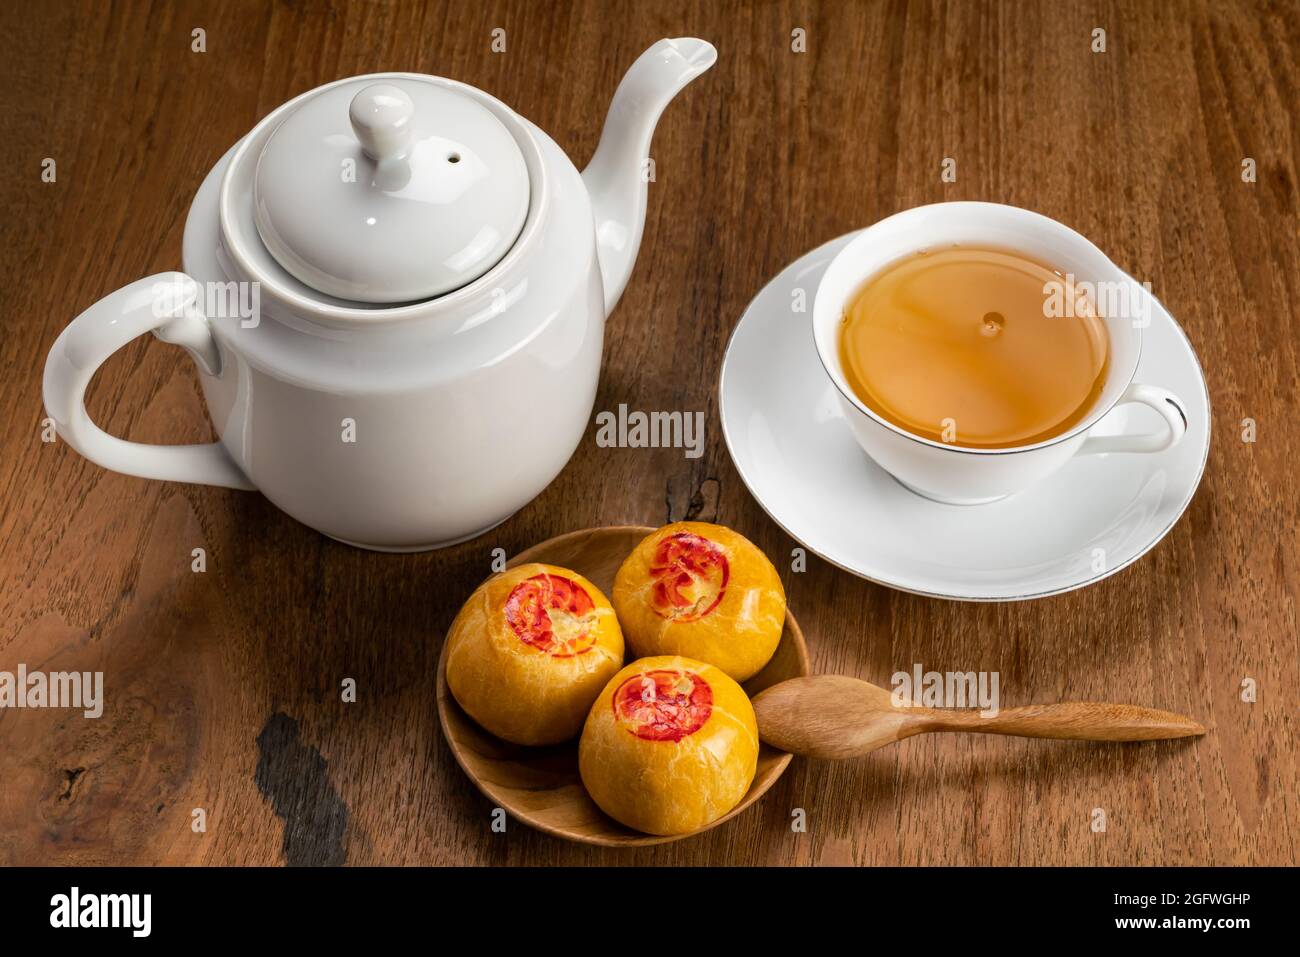 Blick aus dem hohen Winkel auf süßes chinesisches Gebäck oder Mondkuchen, gefüllt mit süßer Mungbohnenpaste und einer weißen Tasse heißen Tees aus Keramik auf einem Holzbrett. Stockfoto